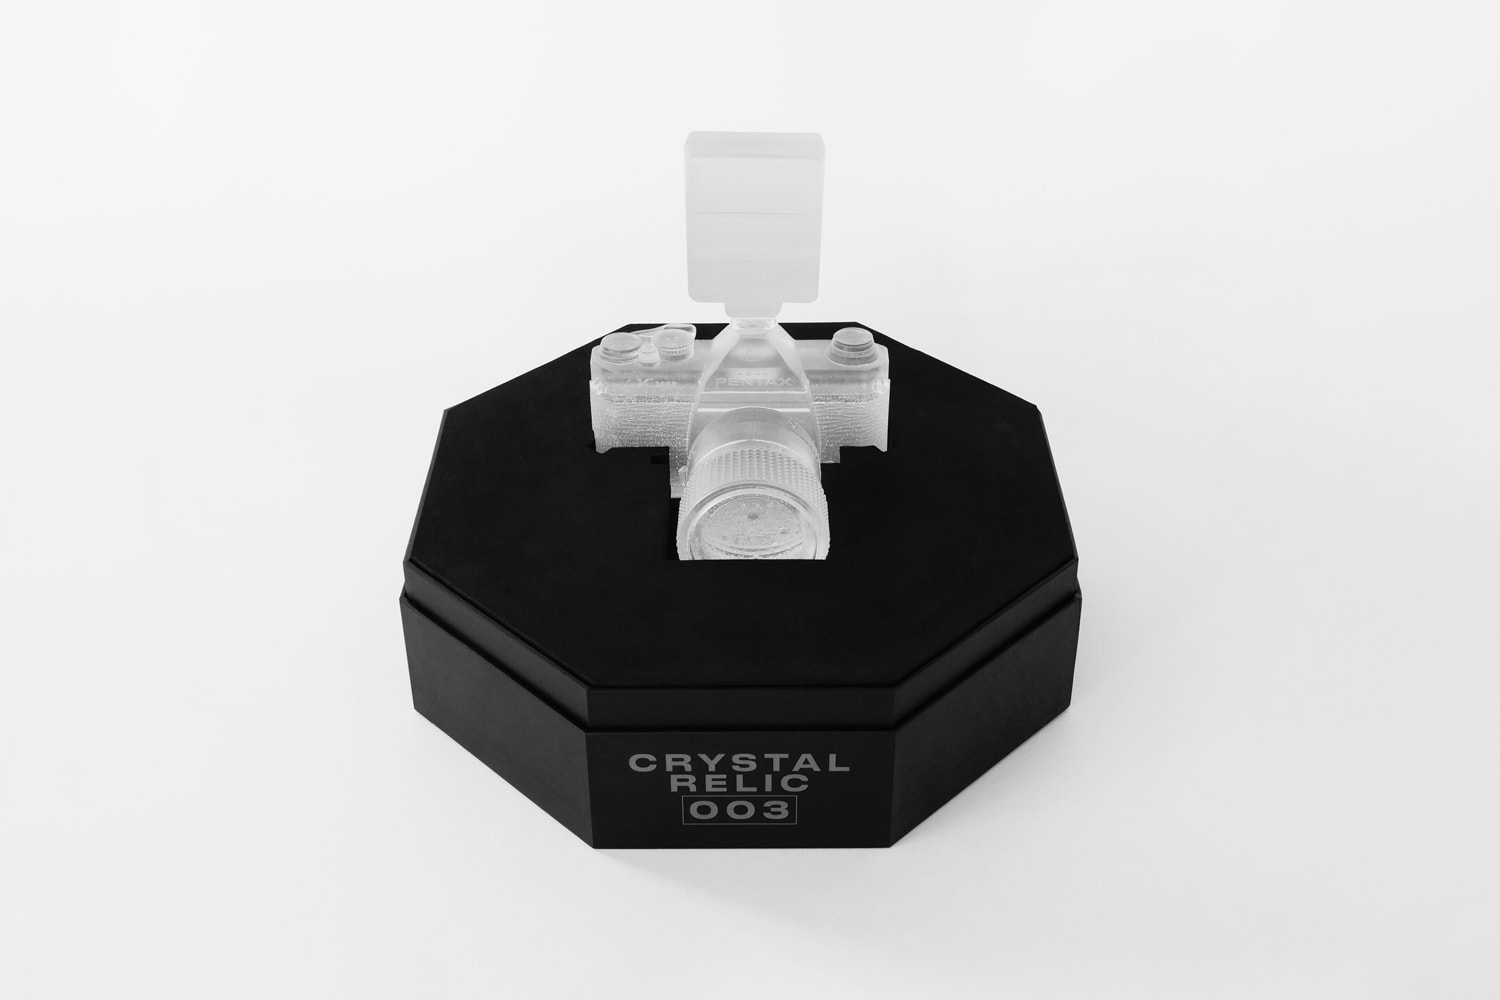 ダニエル・アーシャムがスカルプチャーシリーズ クリスタル レリックの最新作003を発表 daniel arsham crystal relic 003 sculpture edition